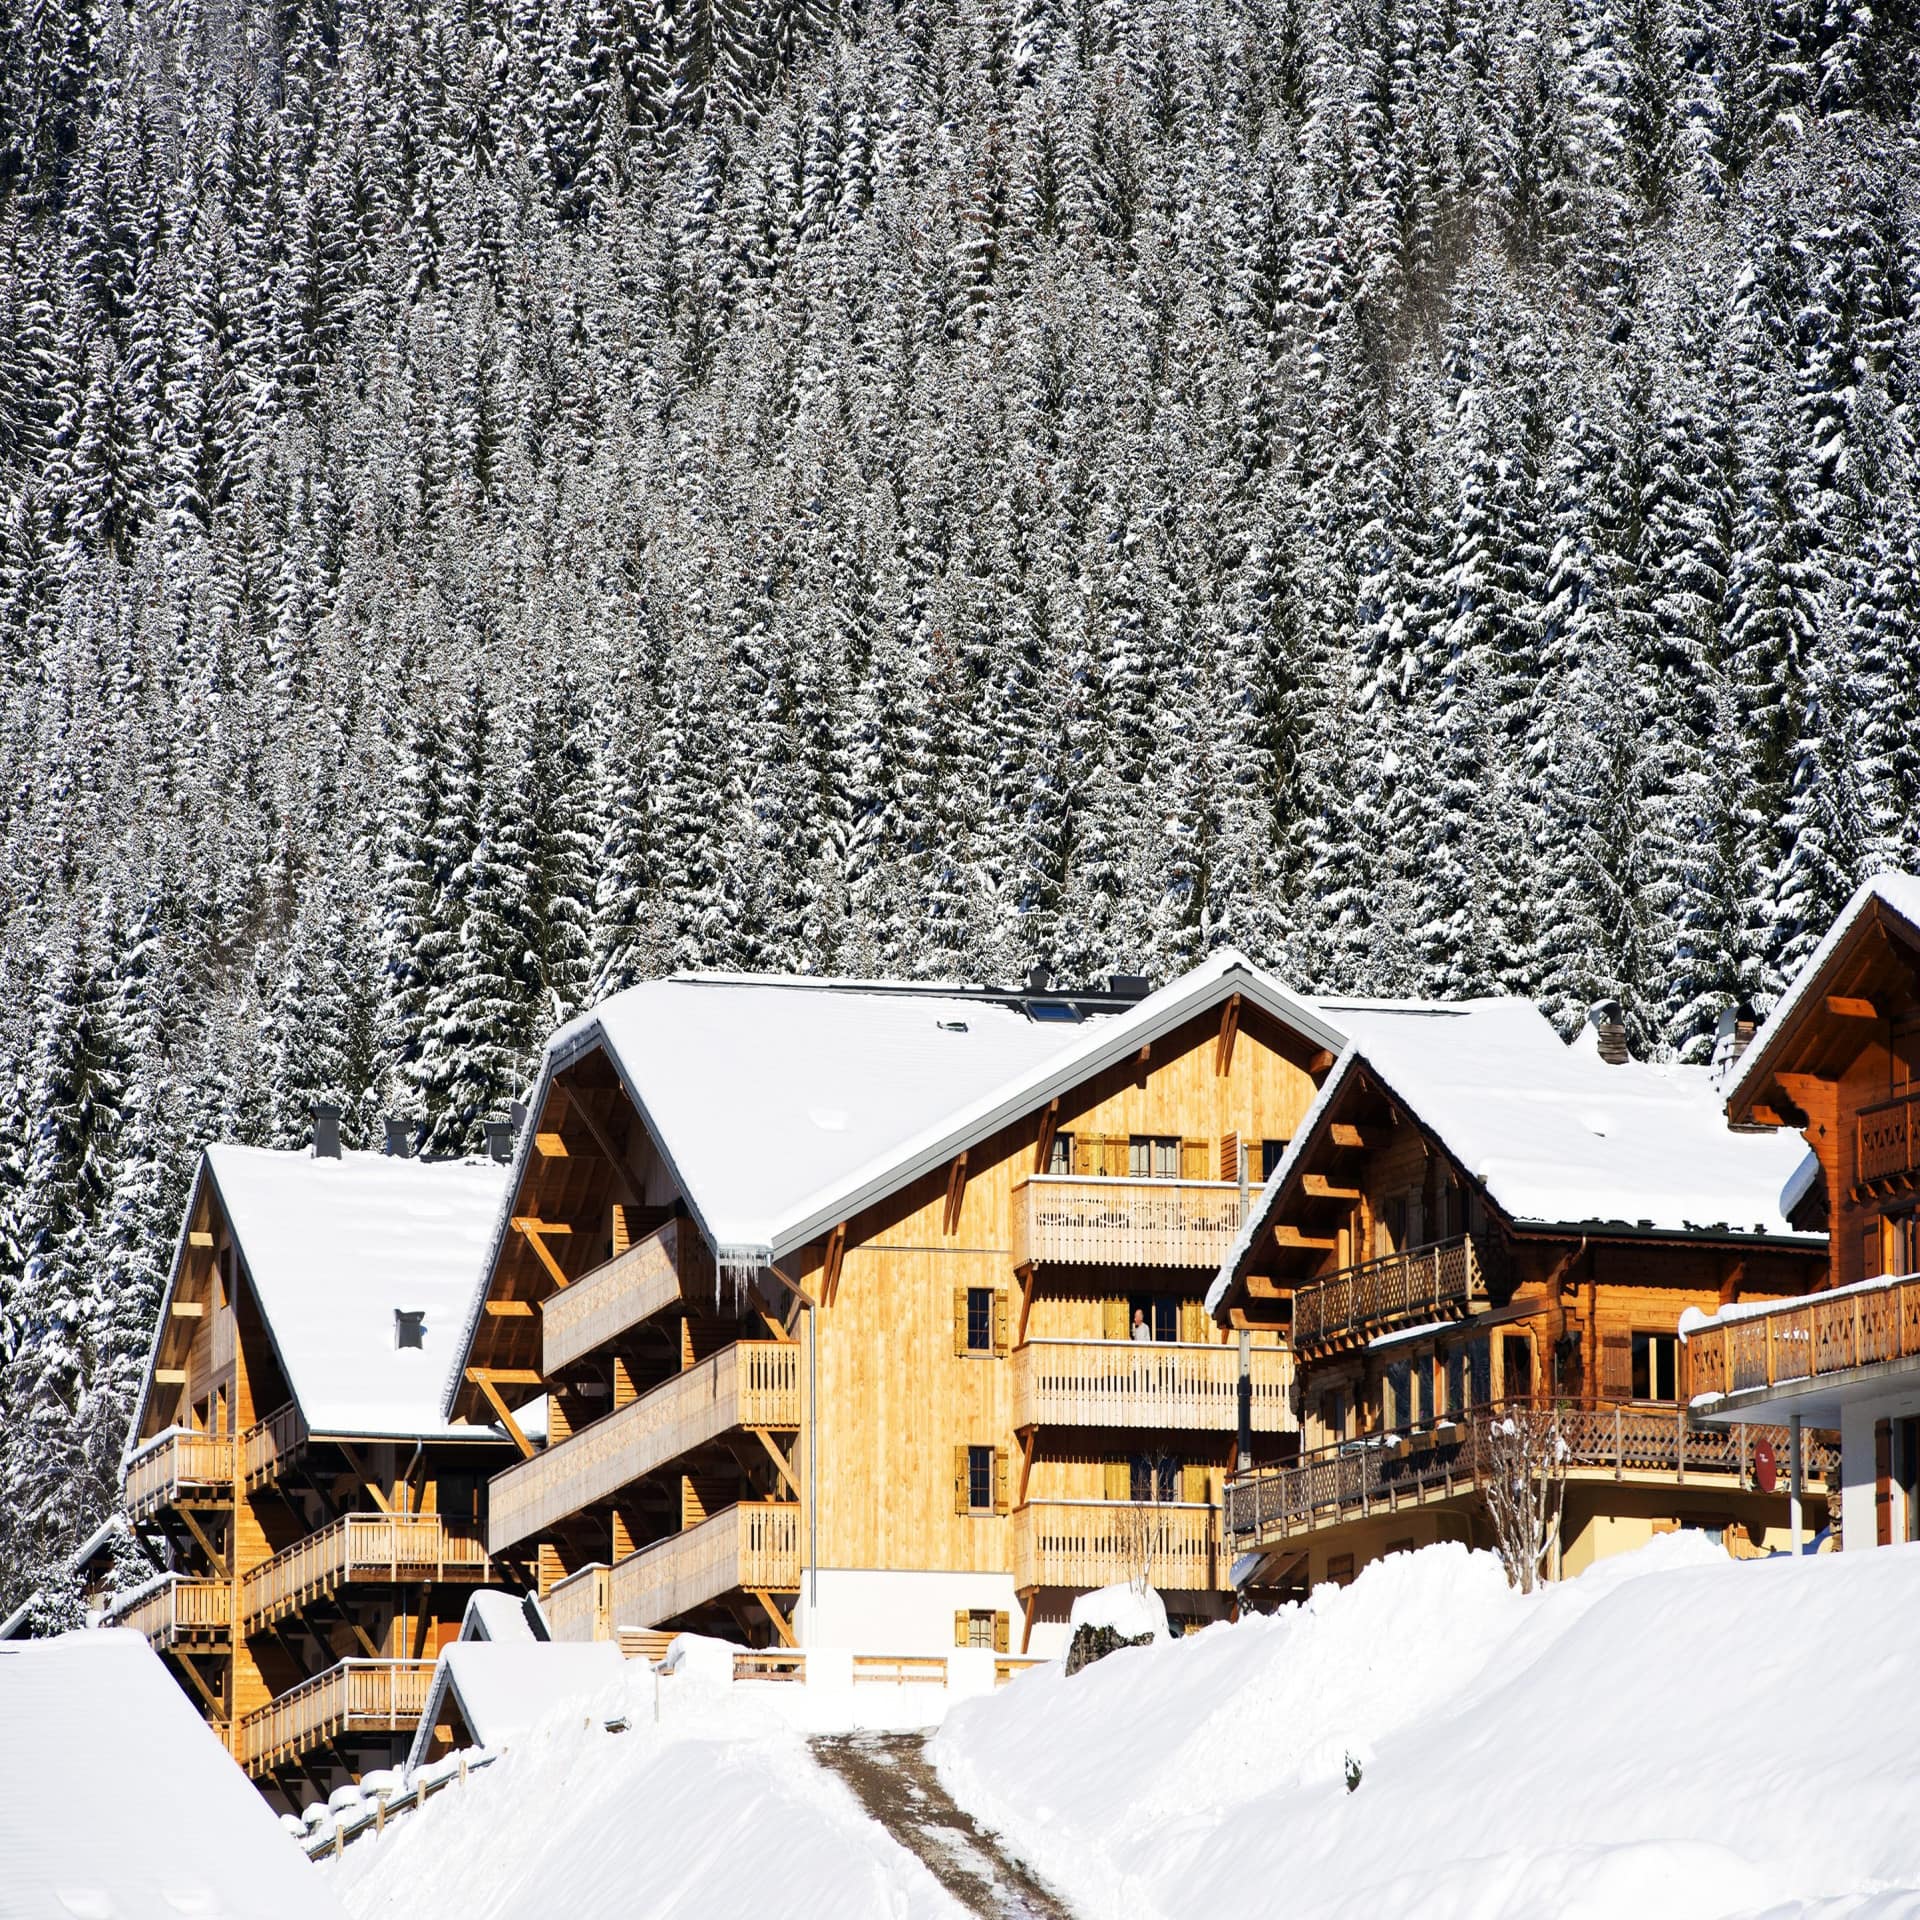 Mehrstöckige Holzhäuser in einem verschneiten Skigebiet in Frankreich. Dahinter Bäume.